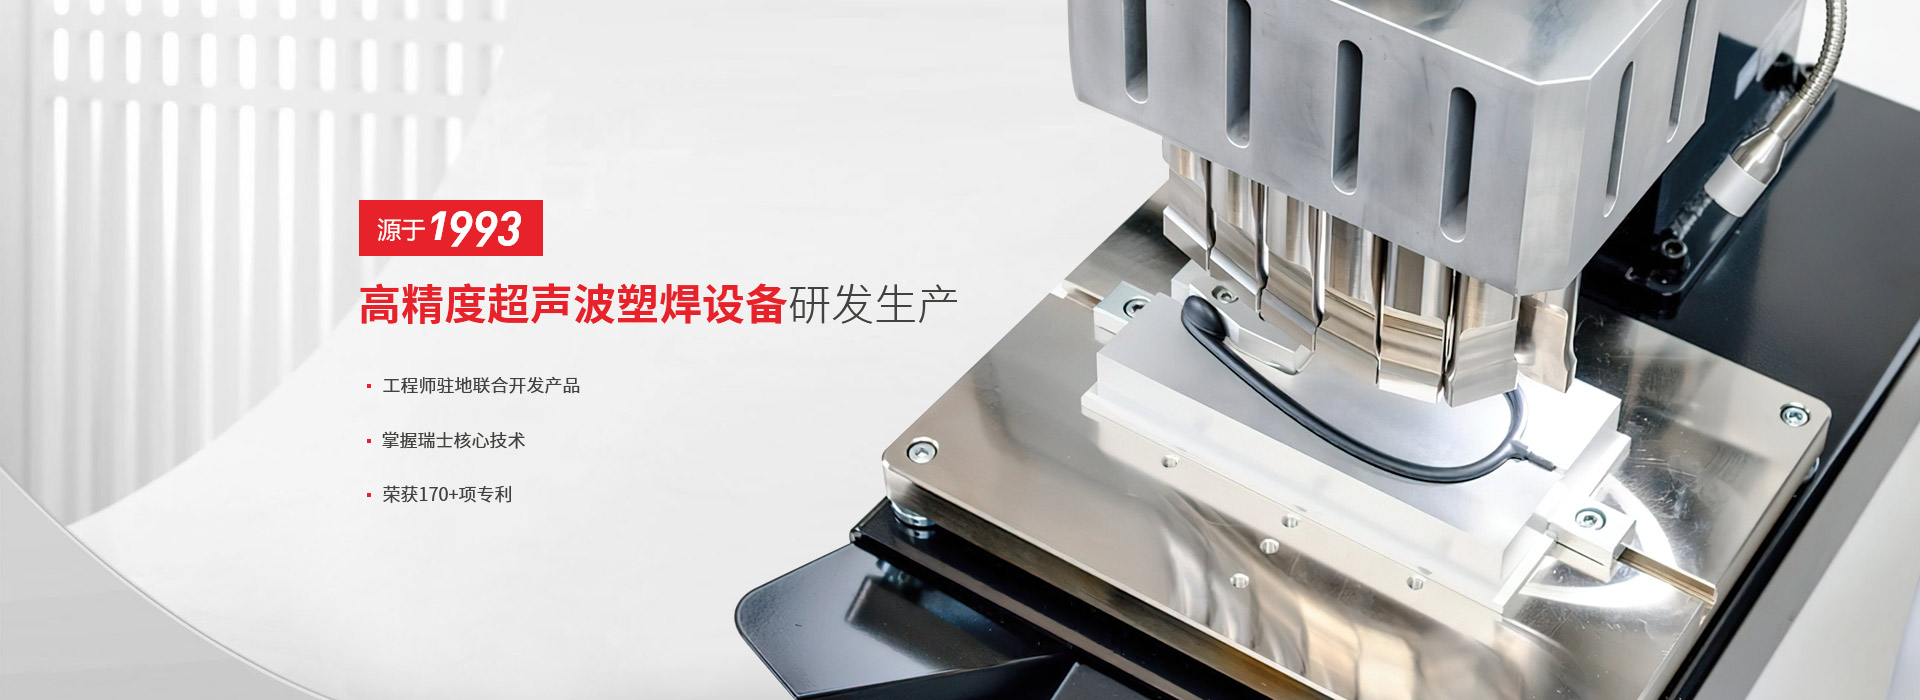 灵高-高精度超声波塑焊设备研发生产